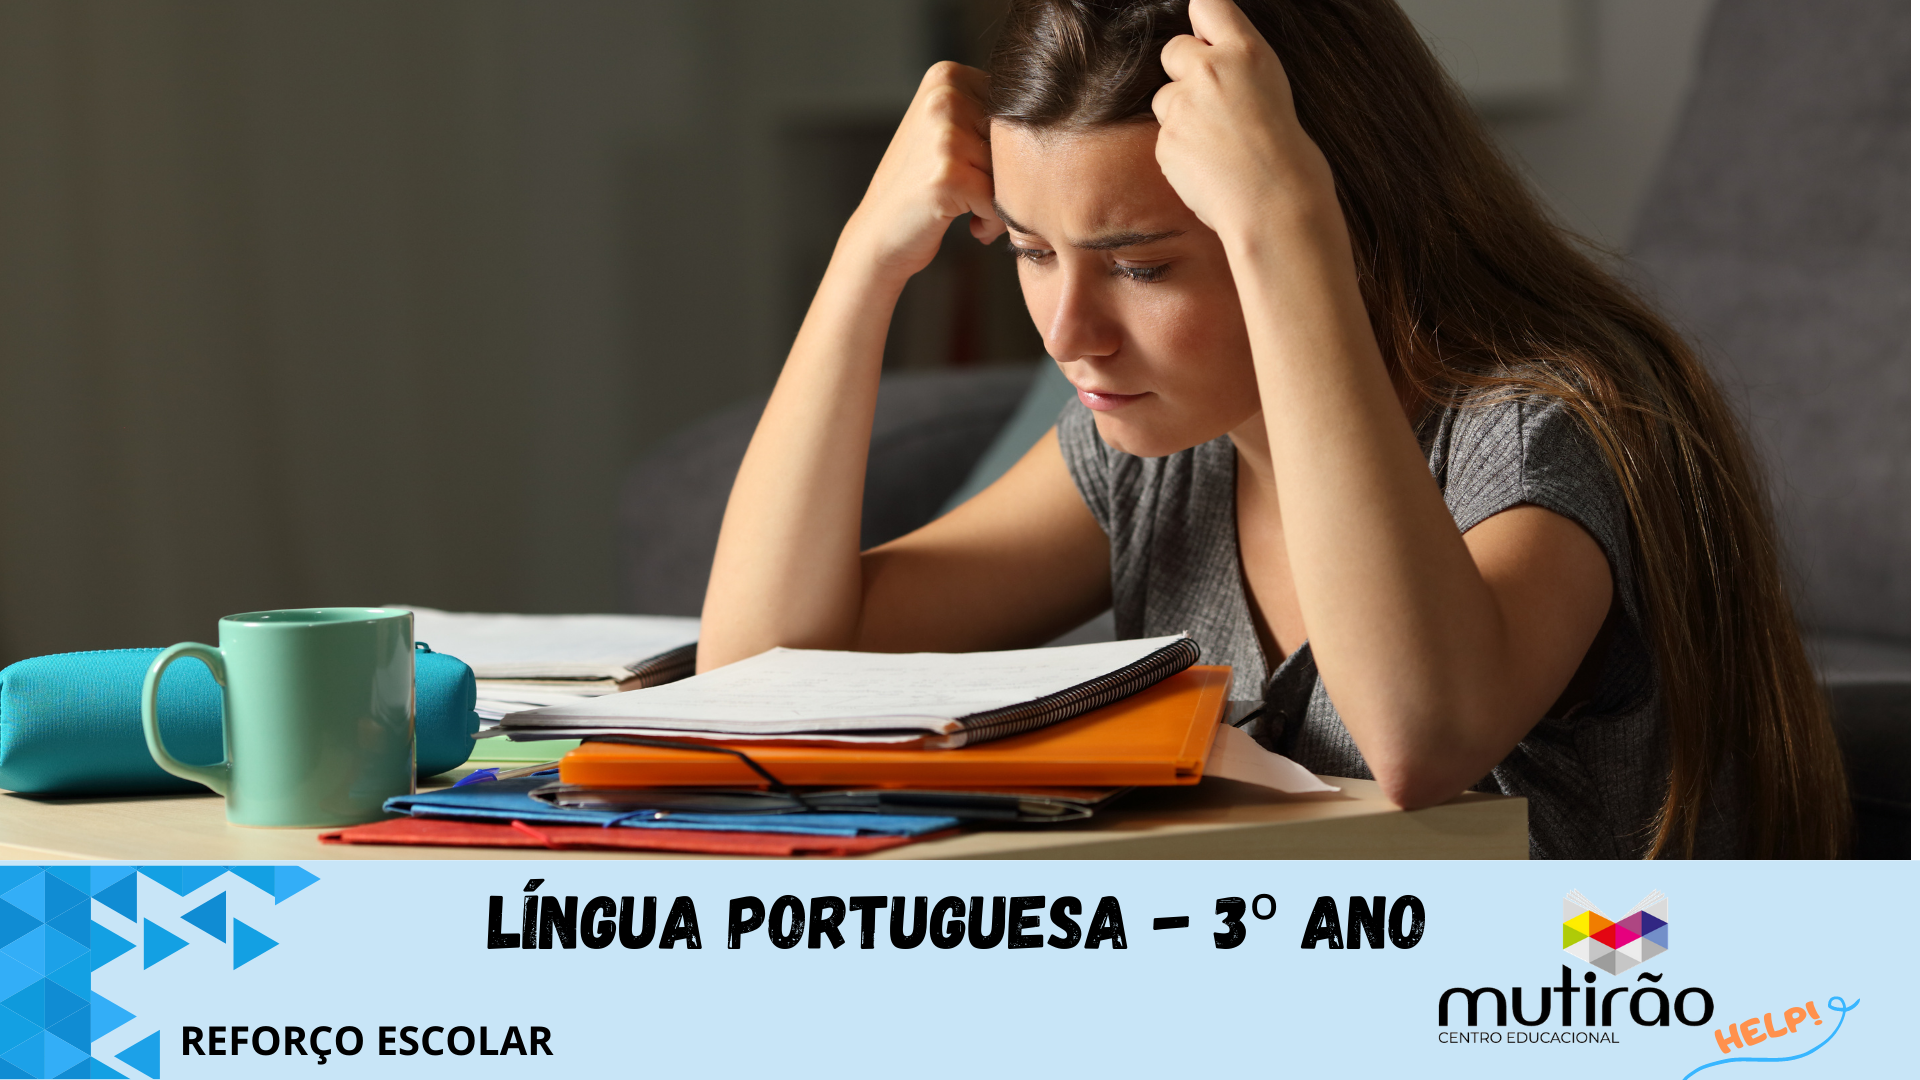 Mutiro Help ! Reforo Escolar 3 ano - LNGUA PORTUGUESA